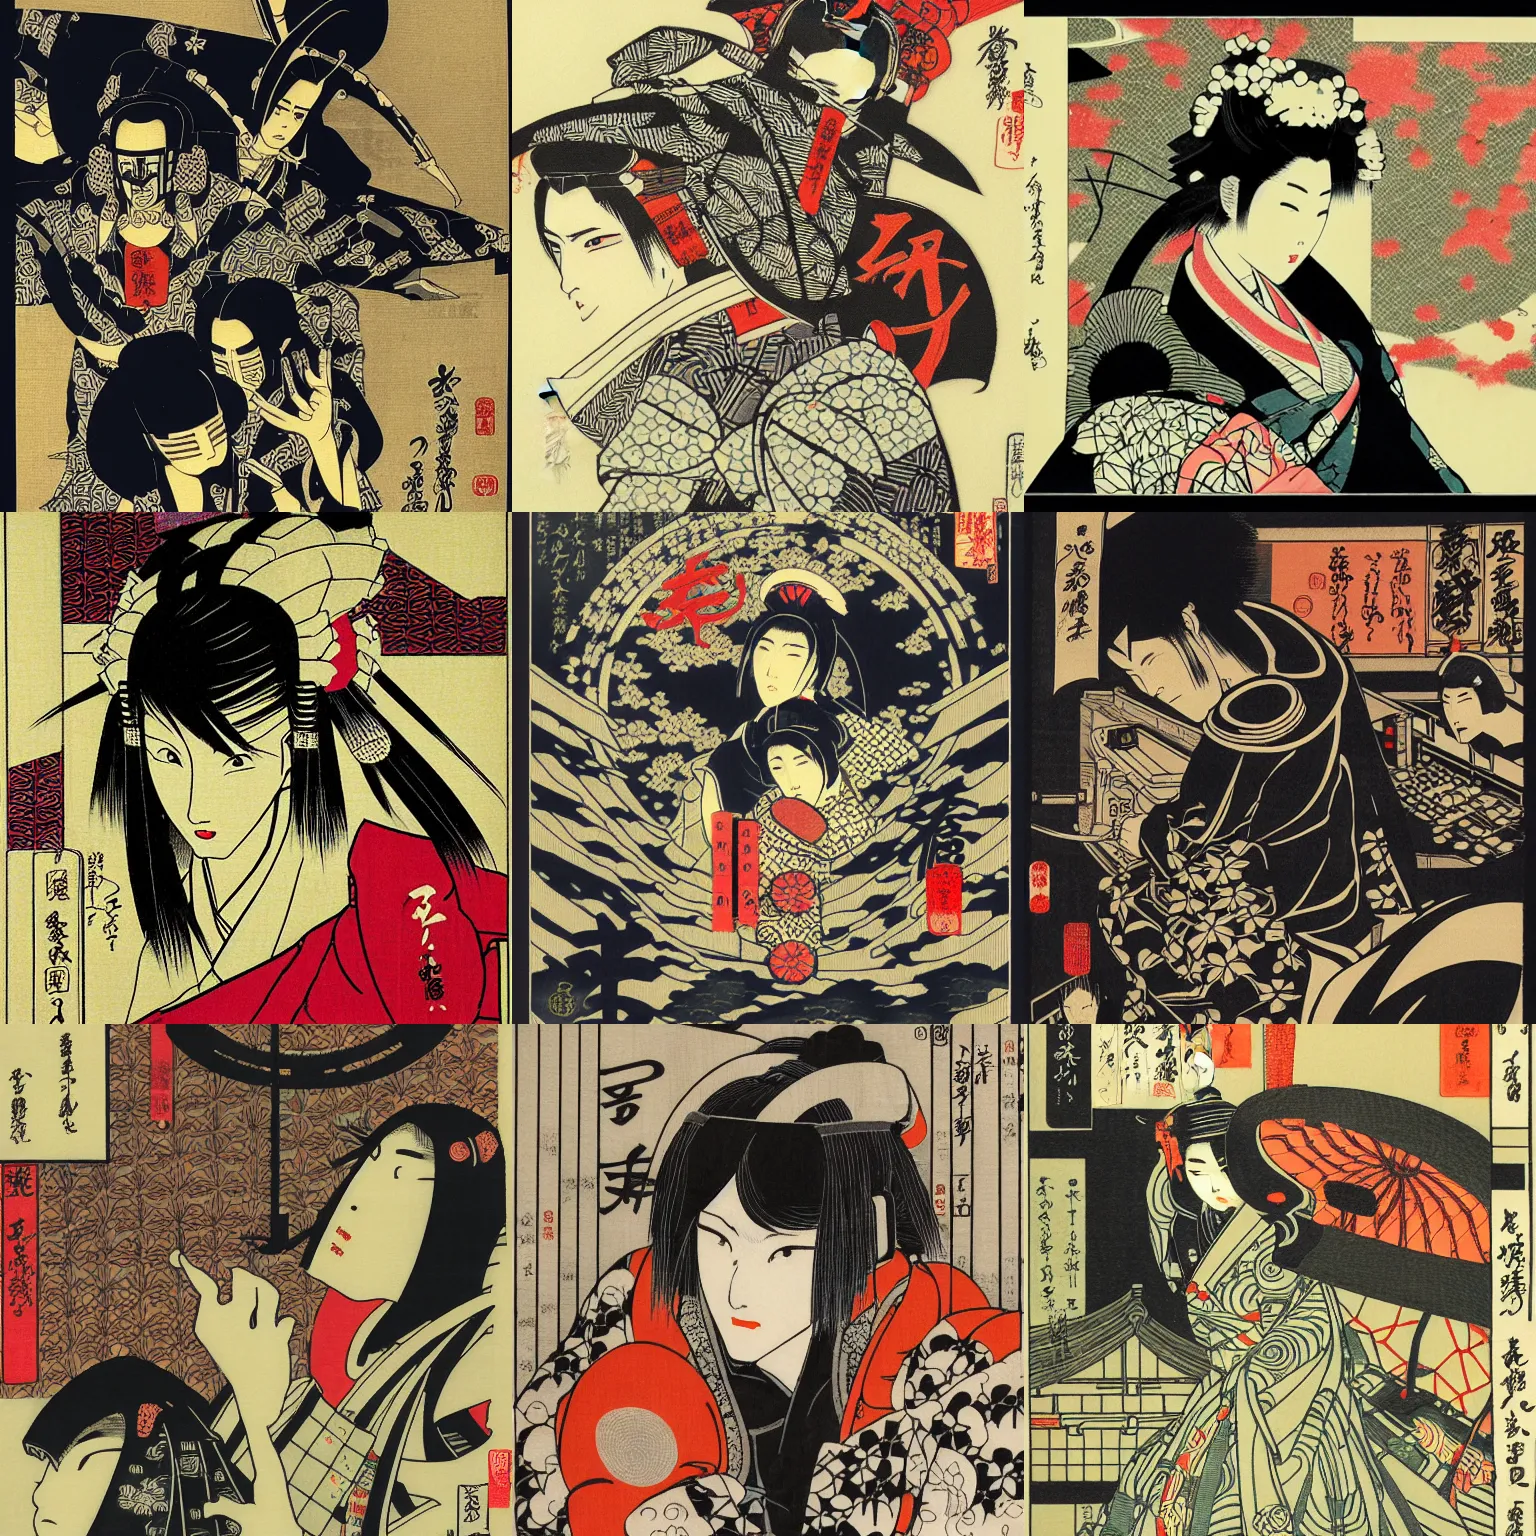 Prompt: japanese cyberpunk silk screen by utagawa yoshiiku, ohara koson, pixiv contest winner